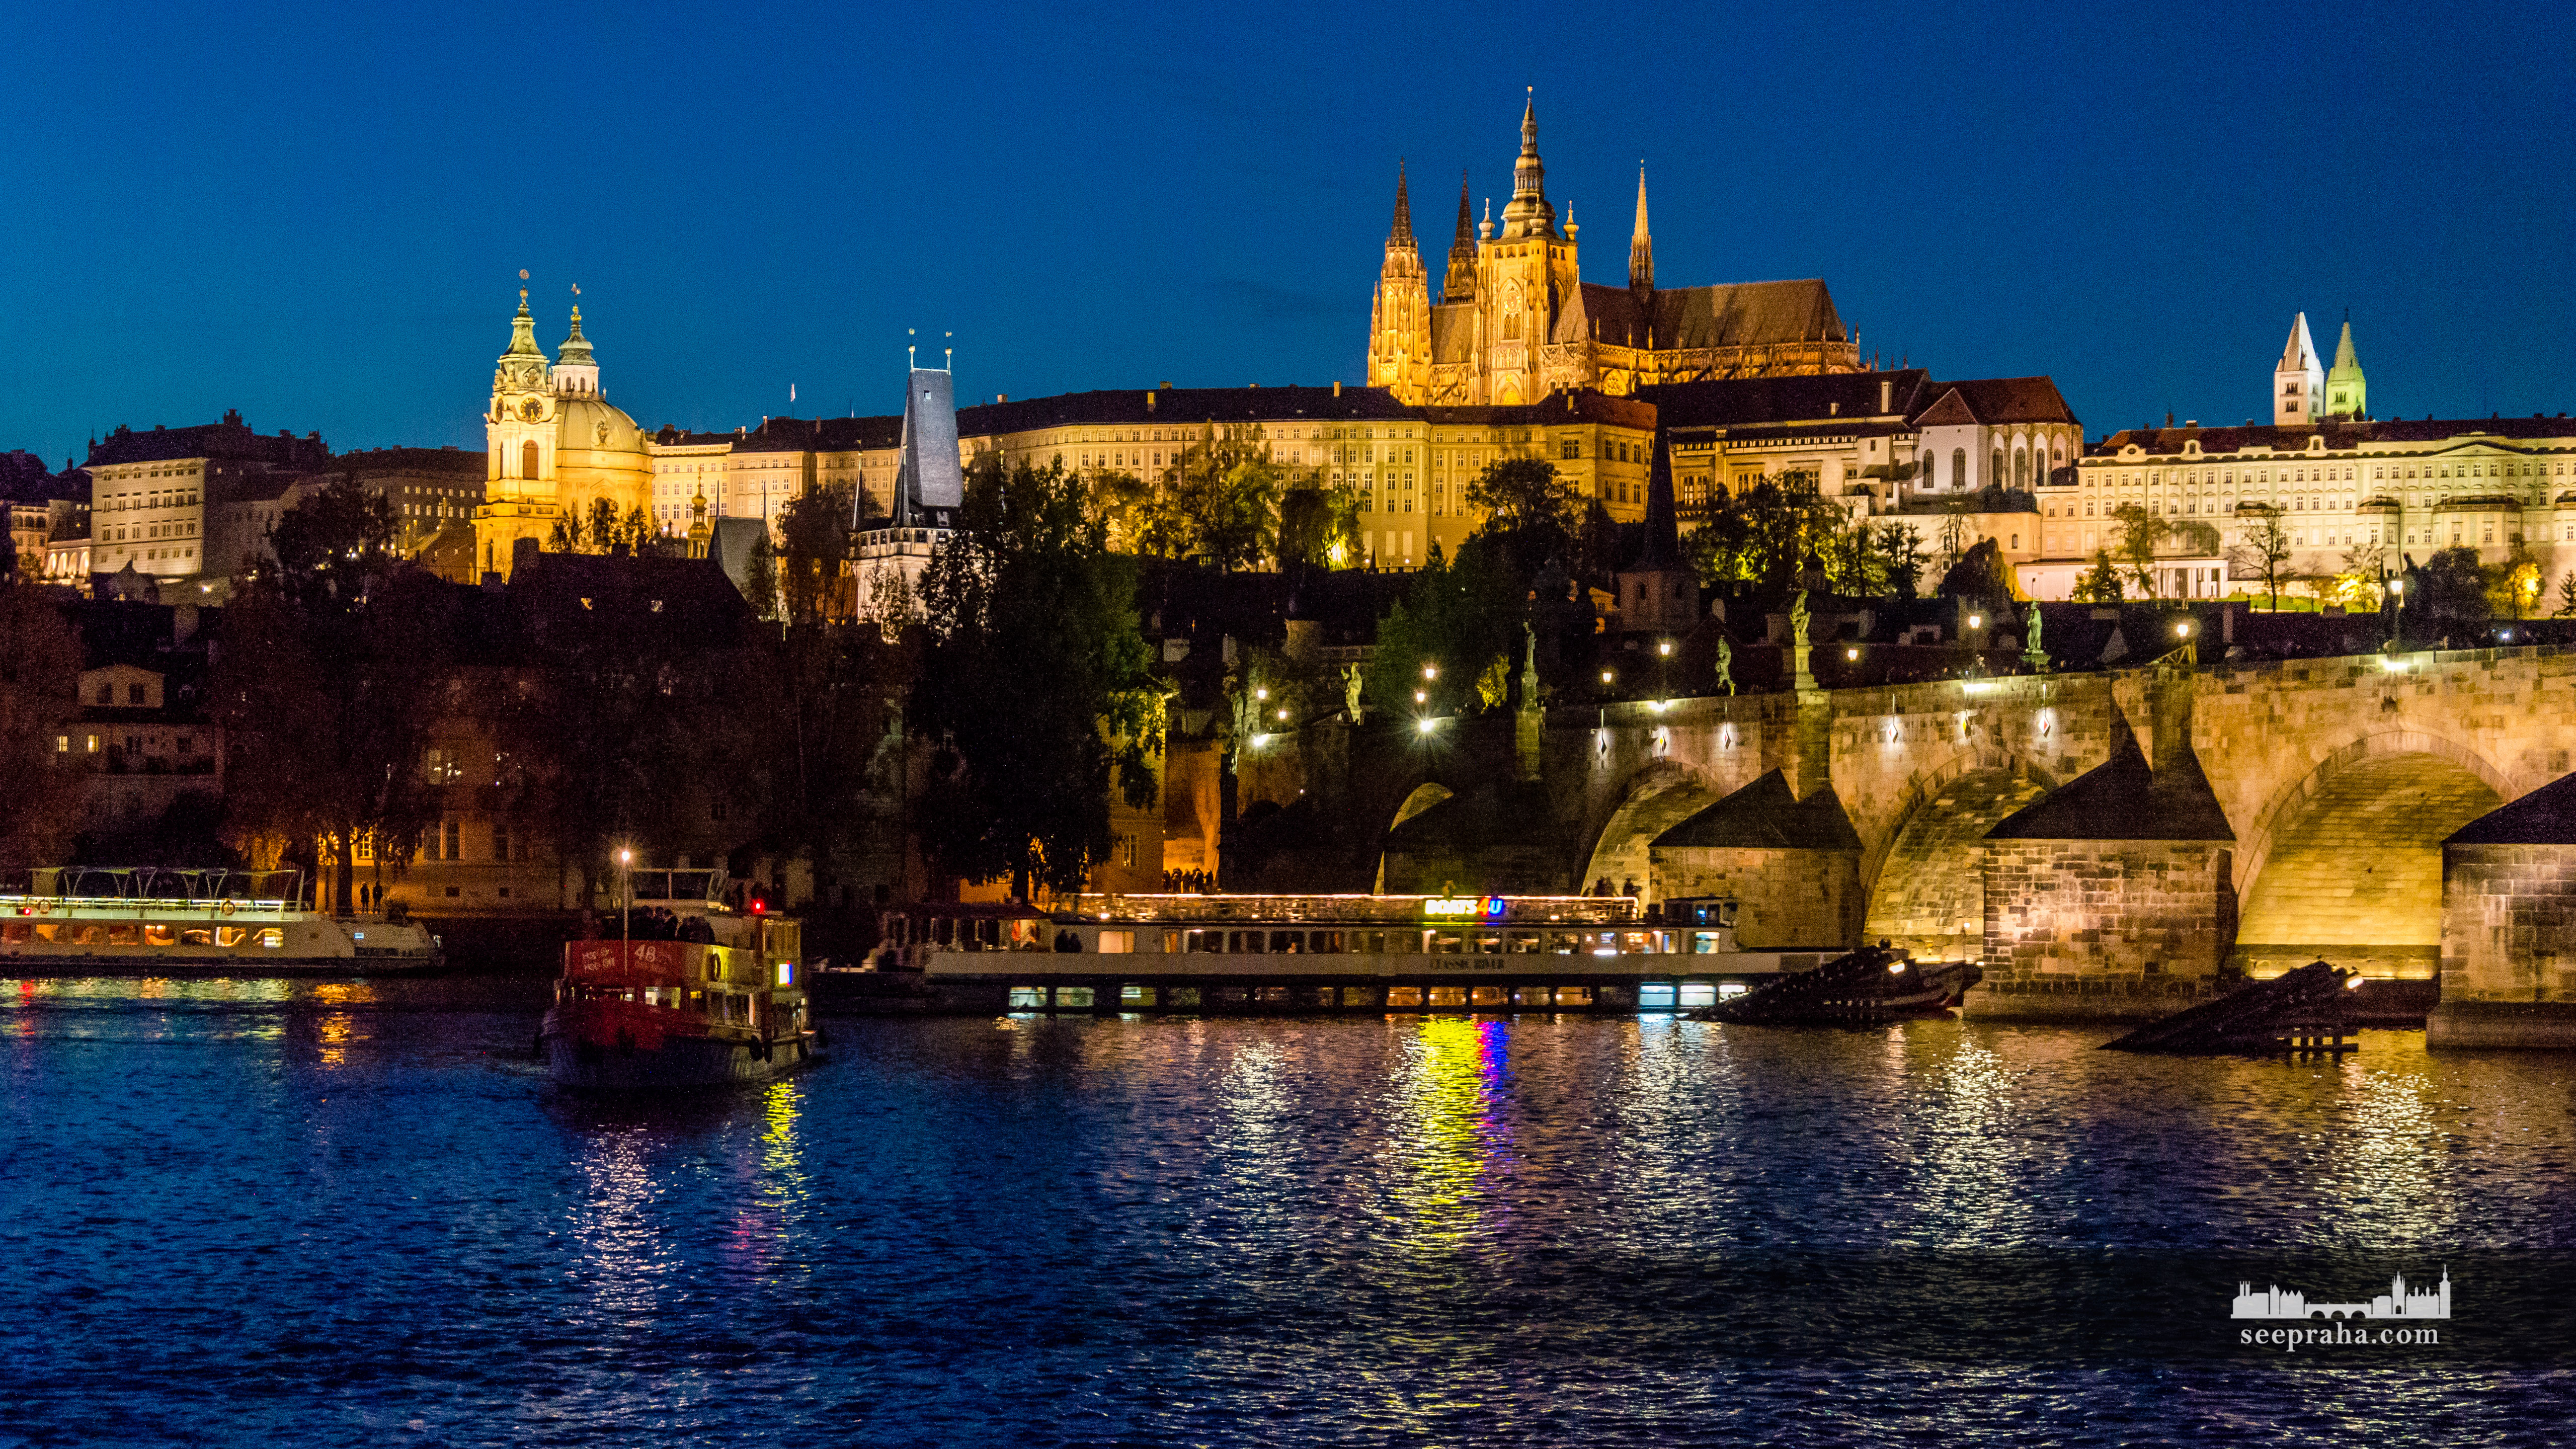 Вид на Крепость Пражский Град ночью, Прага, Чехия